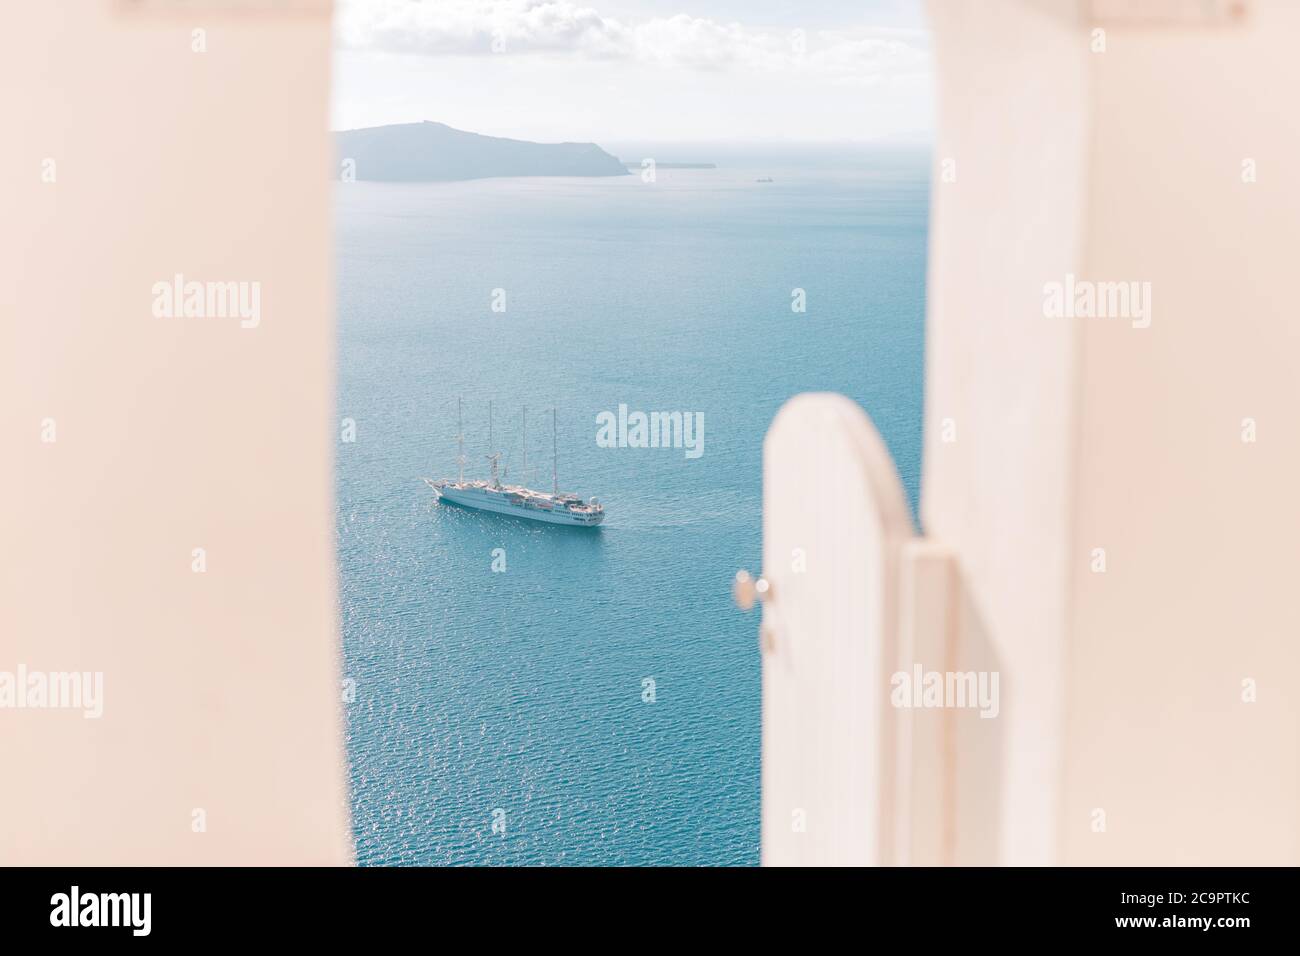 Escaliers blancs sur l'île de Santorini, Grèce. Vue sur la mer de Caldera avec un bateau de croisière en attente. Voyage d'été de luxe, vacances de rêve Banque D'Images